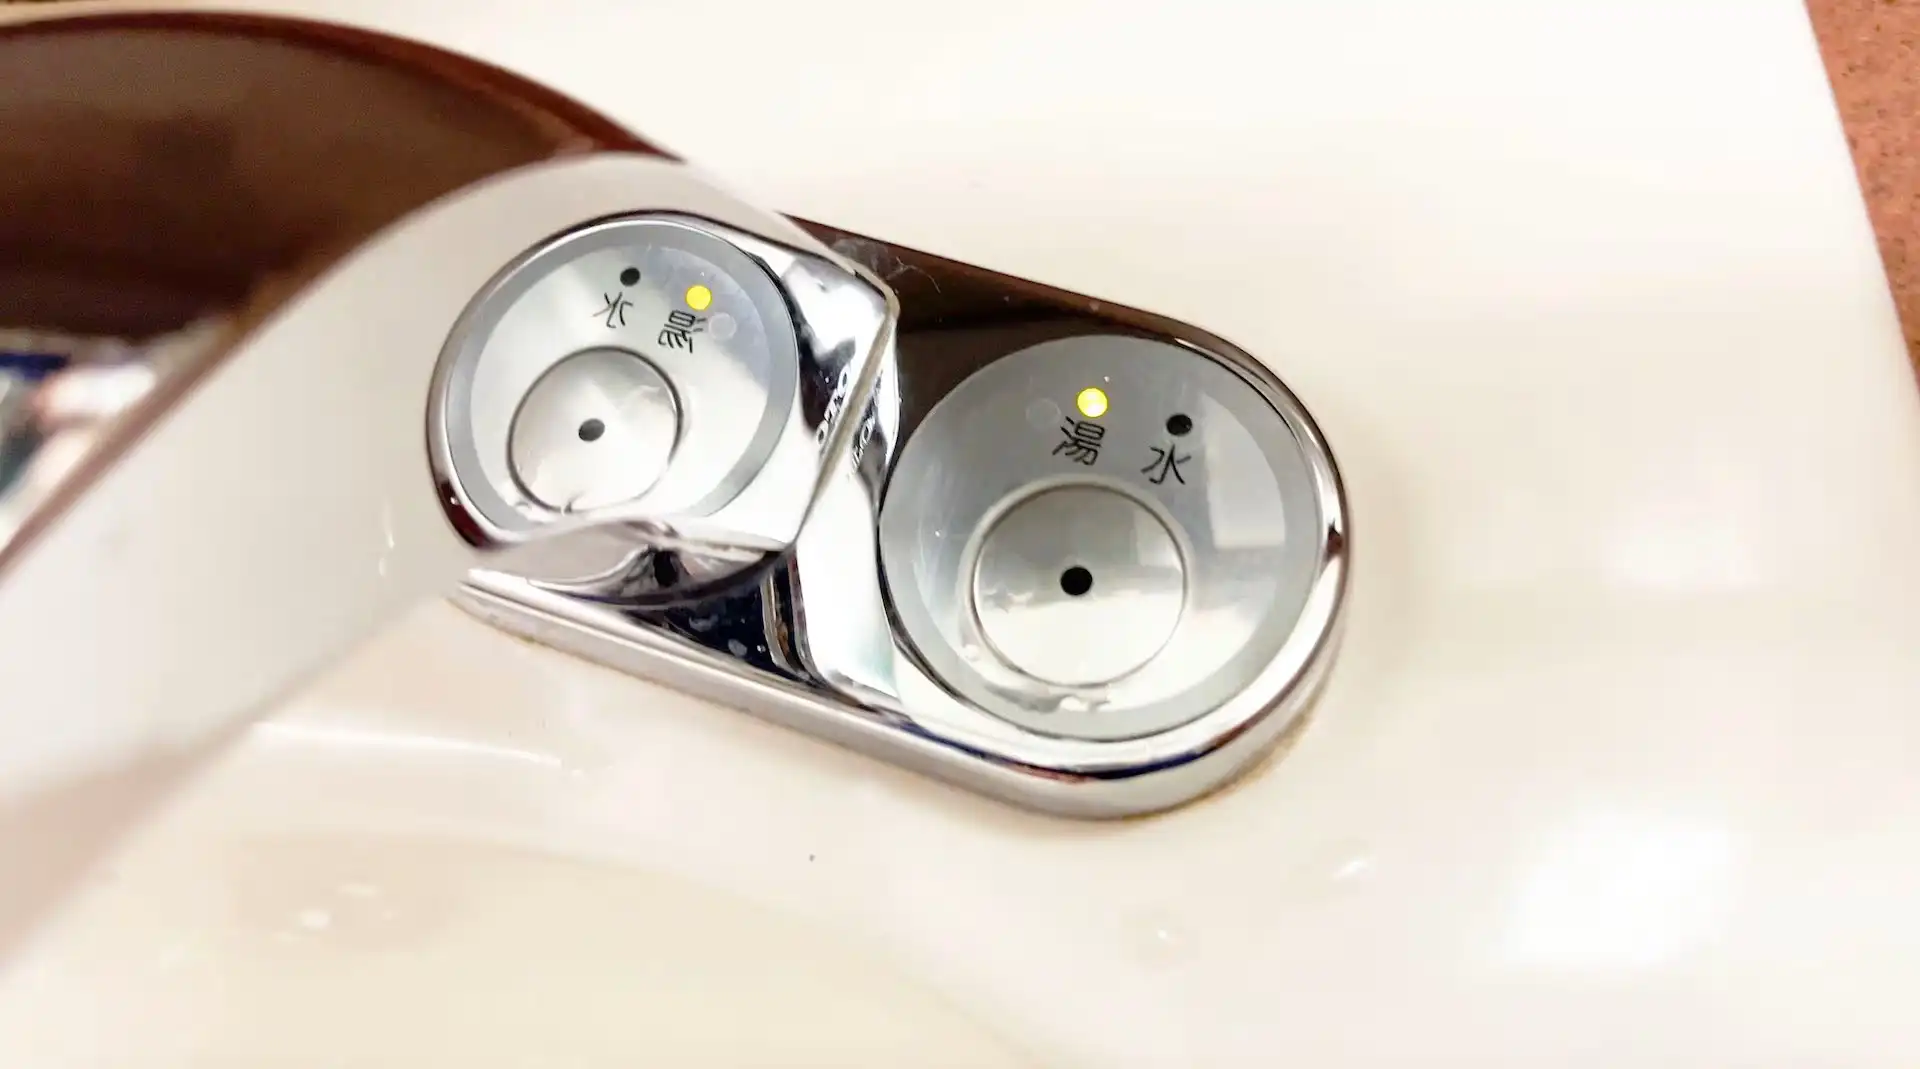 寝台特急サンライズ出雲号の車内の洗面台の蛇口部分に付いている冷水と温水が選択できるボタン